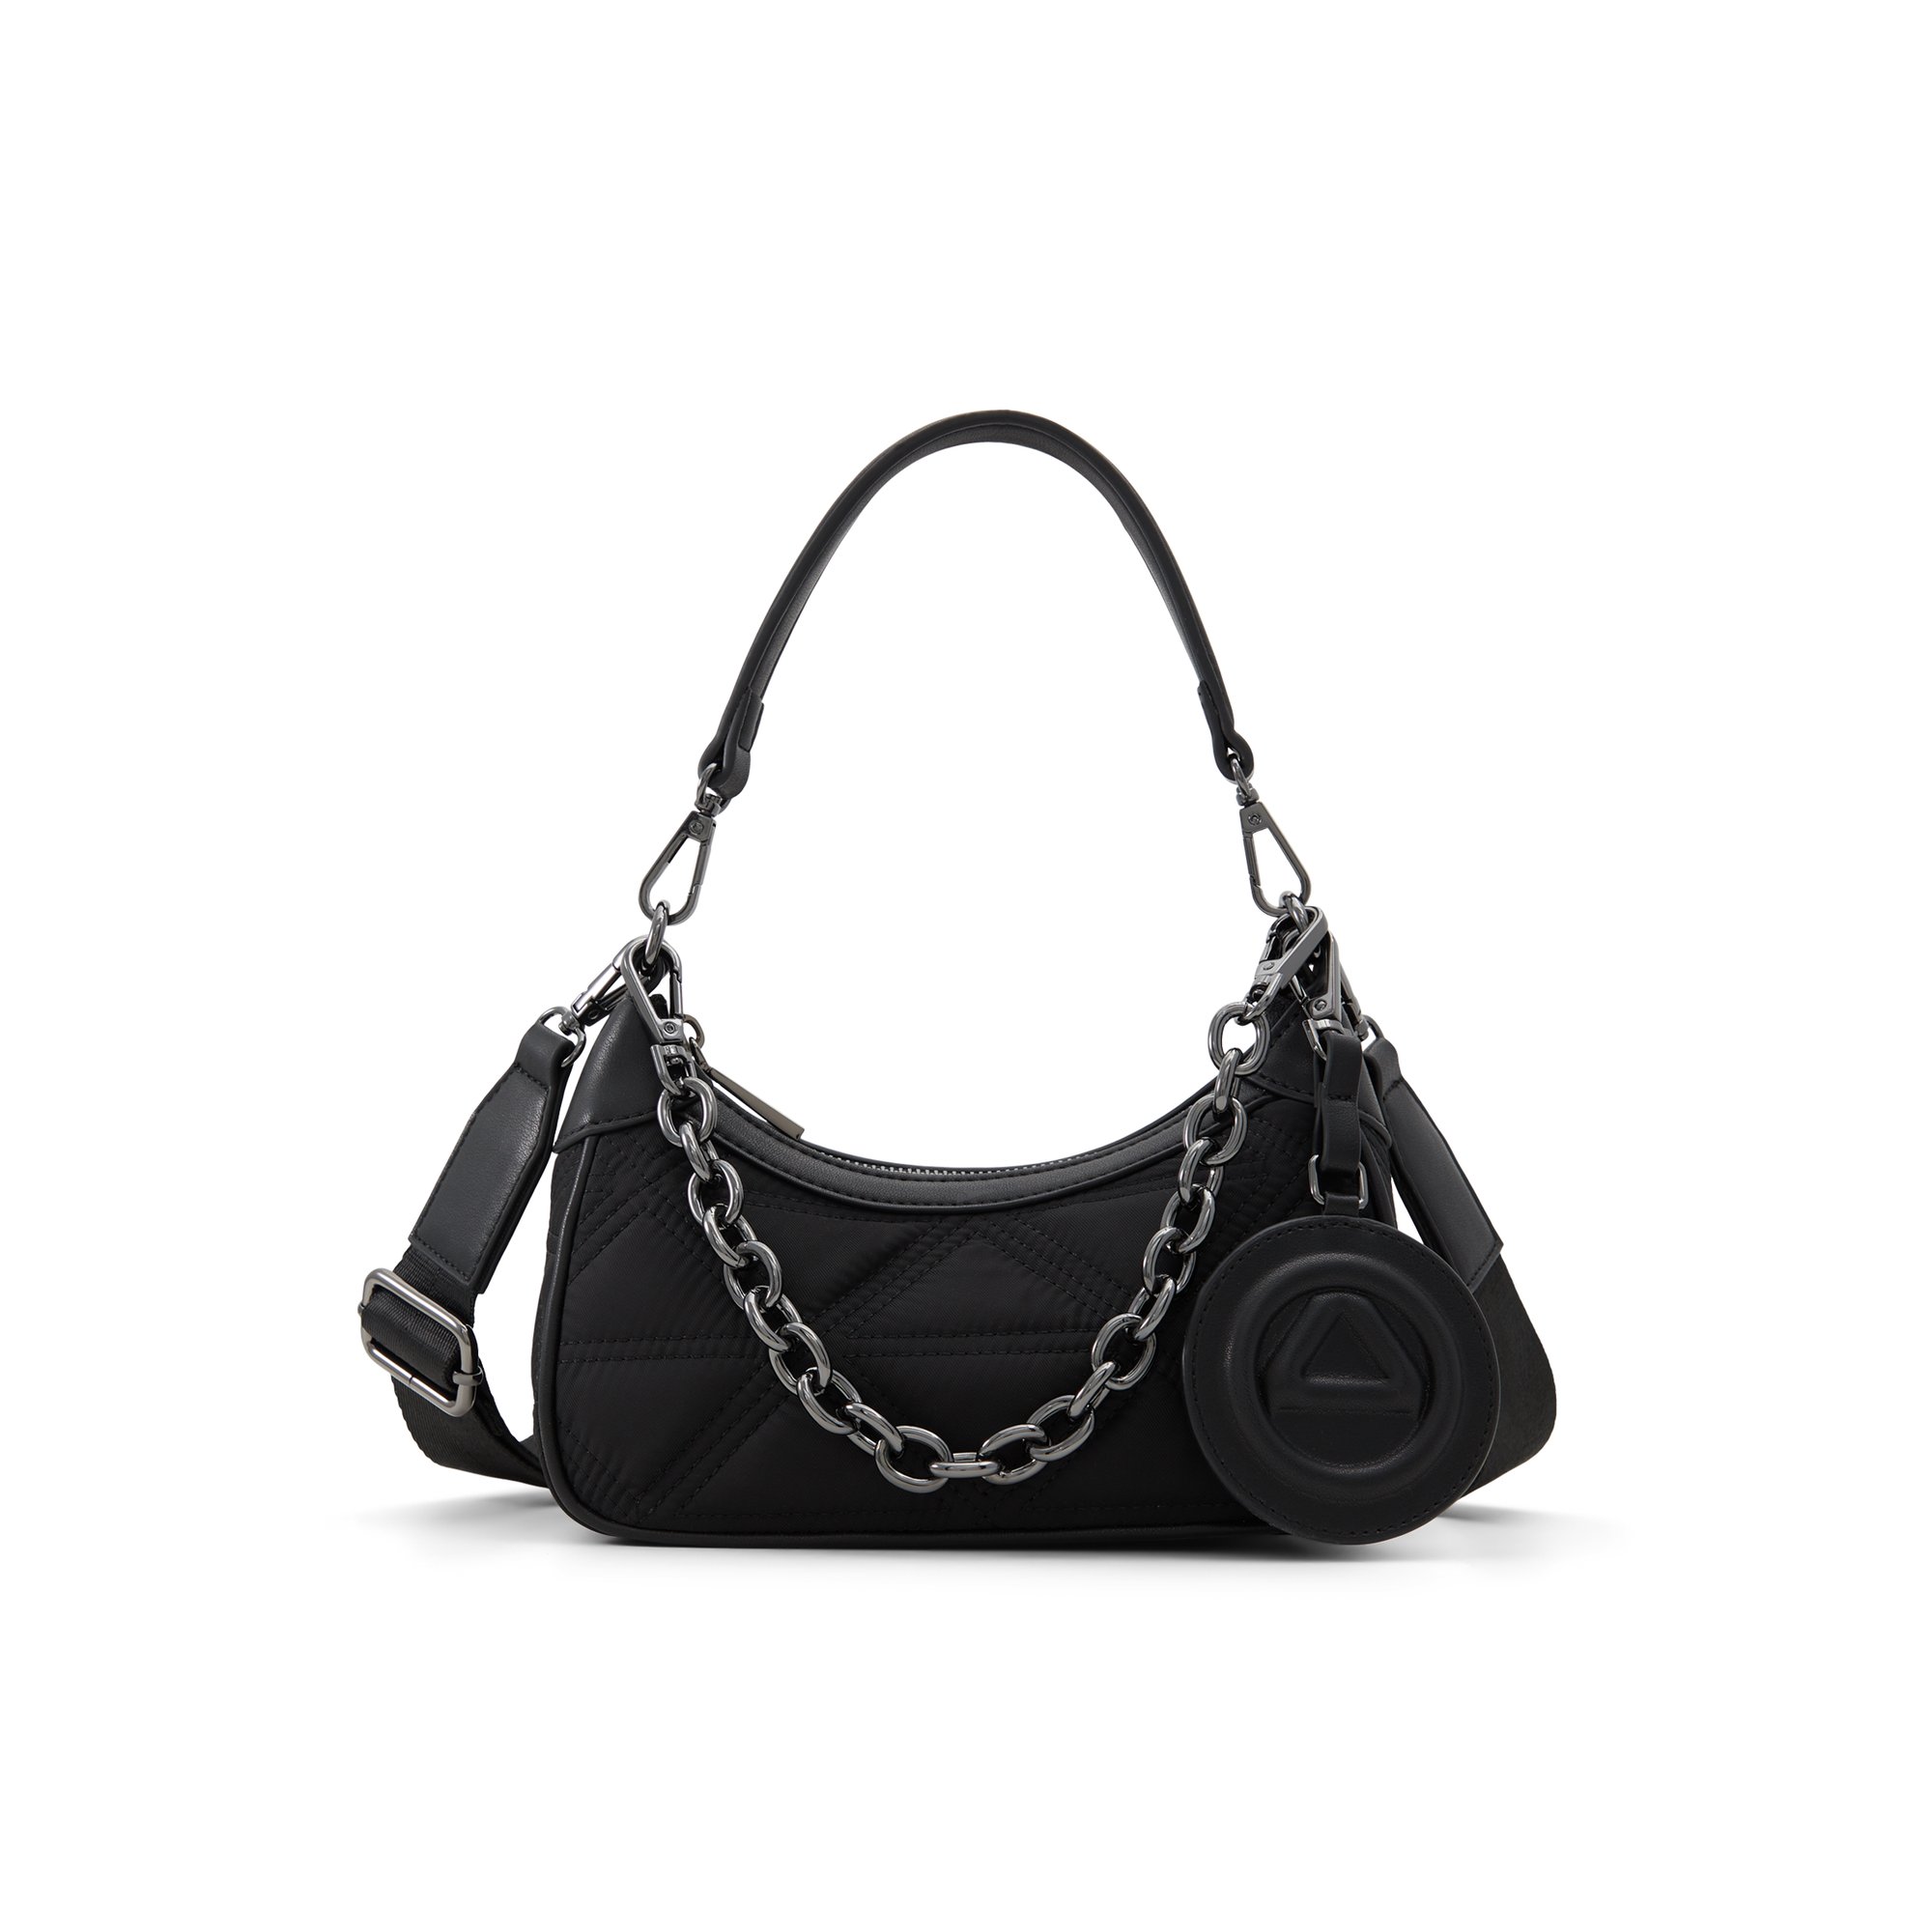 ALDO Ferventx - Women's Shoulder Bag Handbag - Black